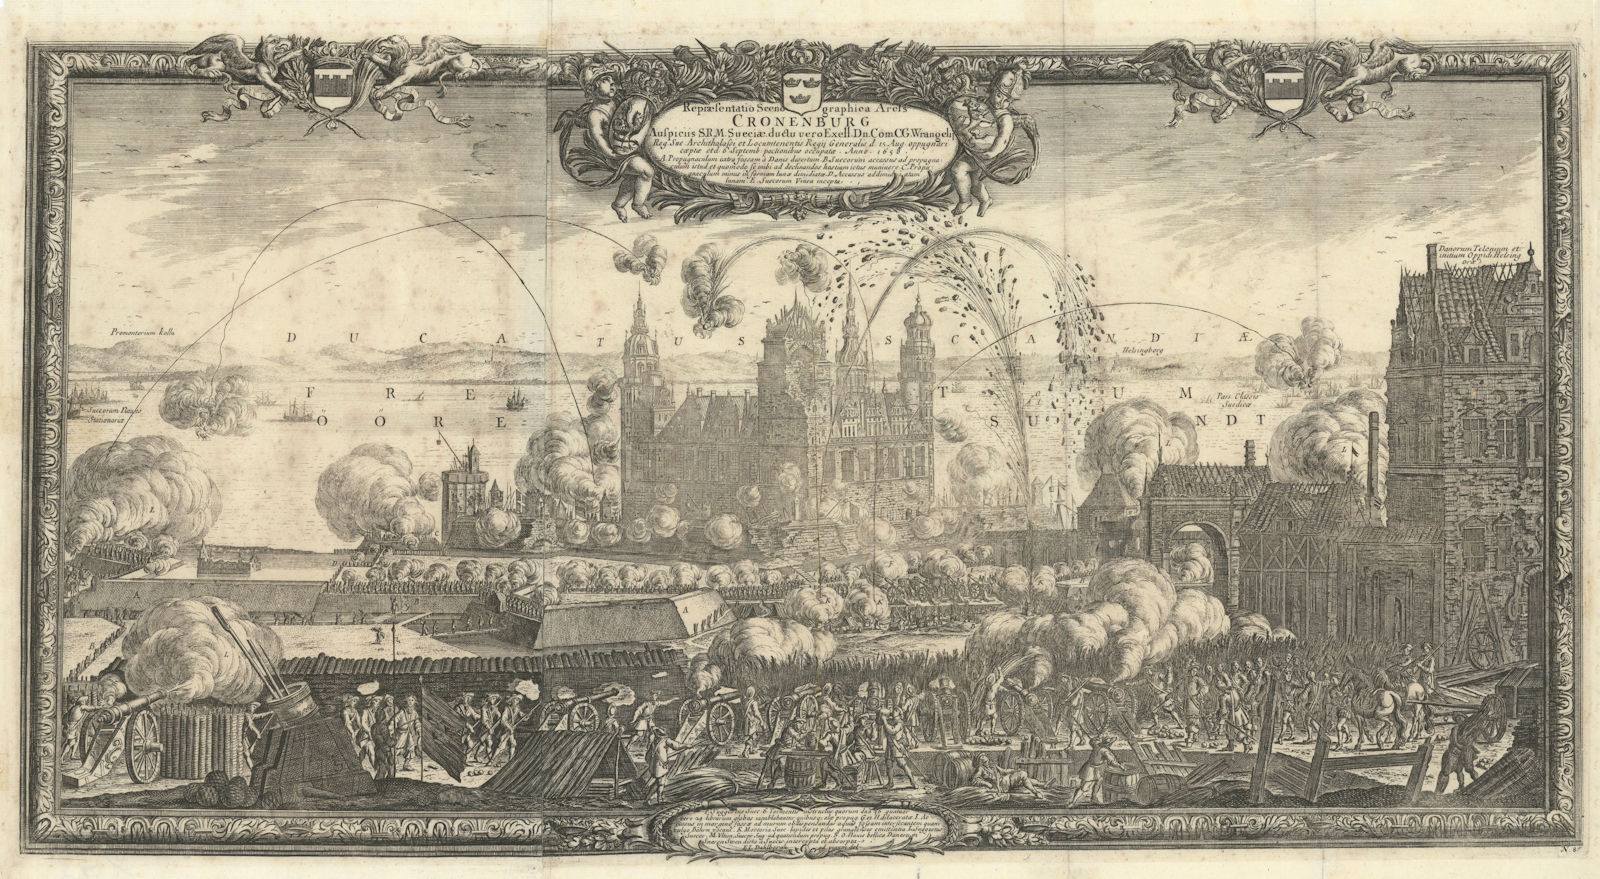 Repraesentatio Scenographica Arcis Cronenburg. Siege of Kronborg. DAHLBERGH 1696